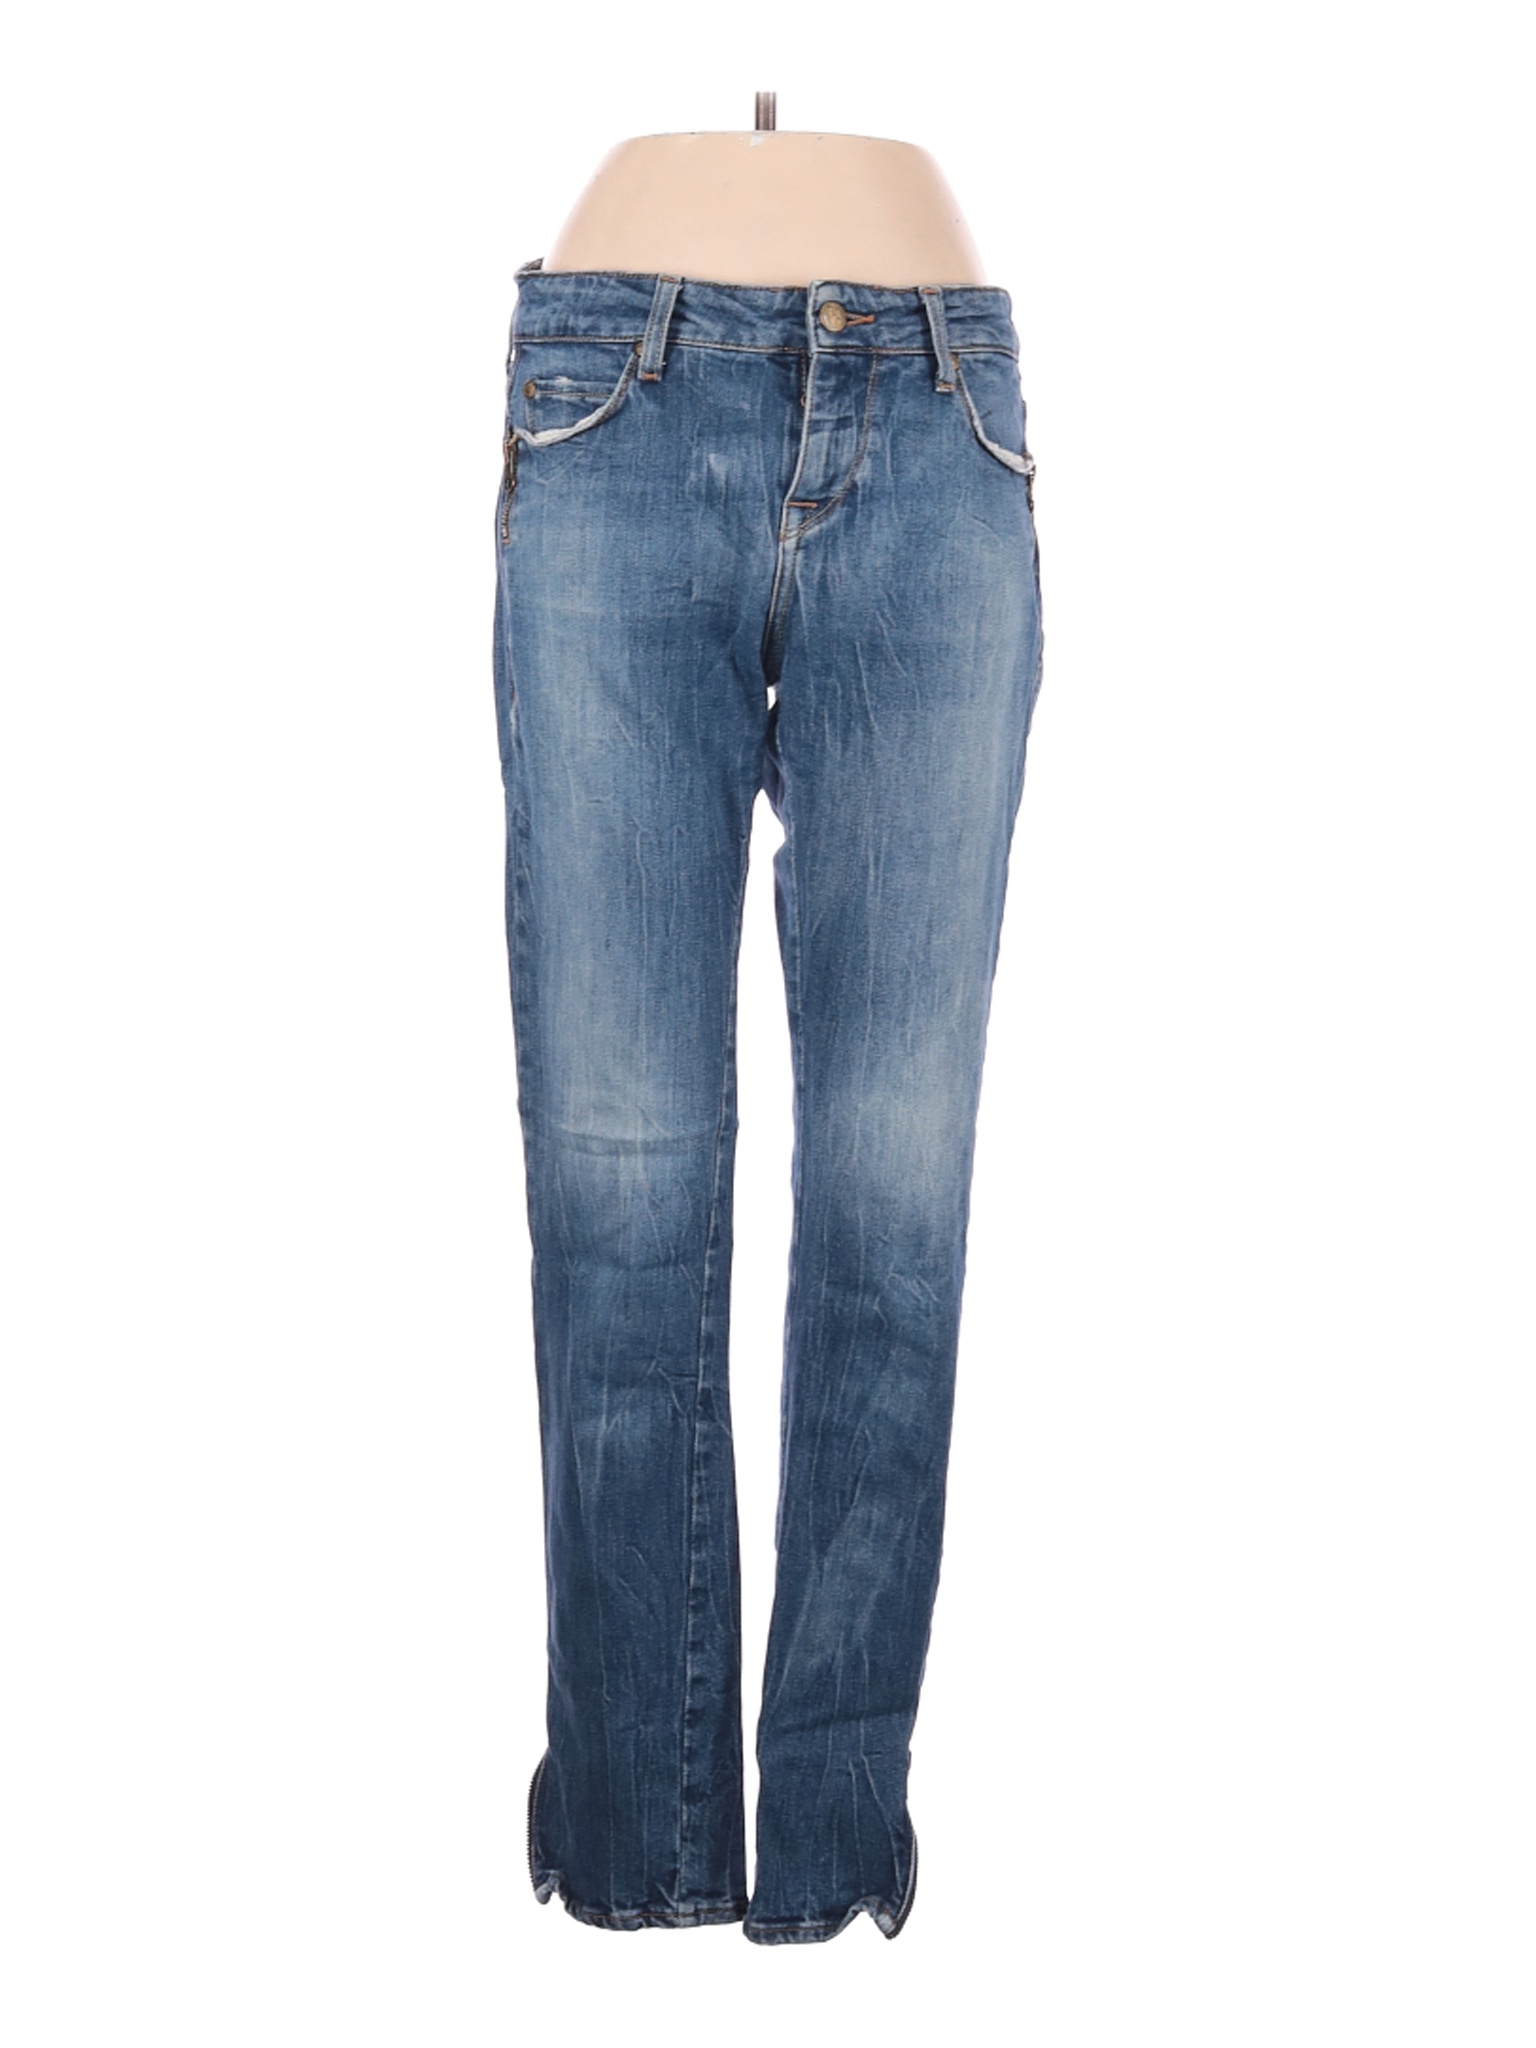 Acquaverde Women Blue Jeans 27W | eBay